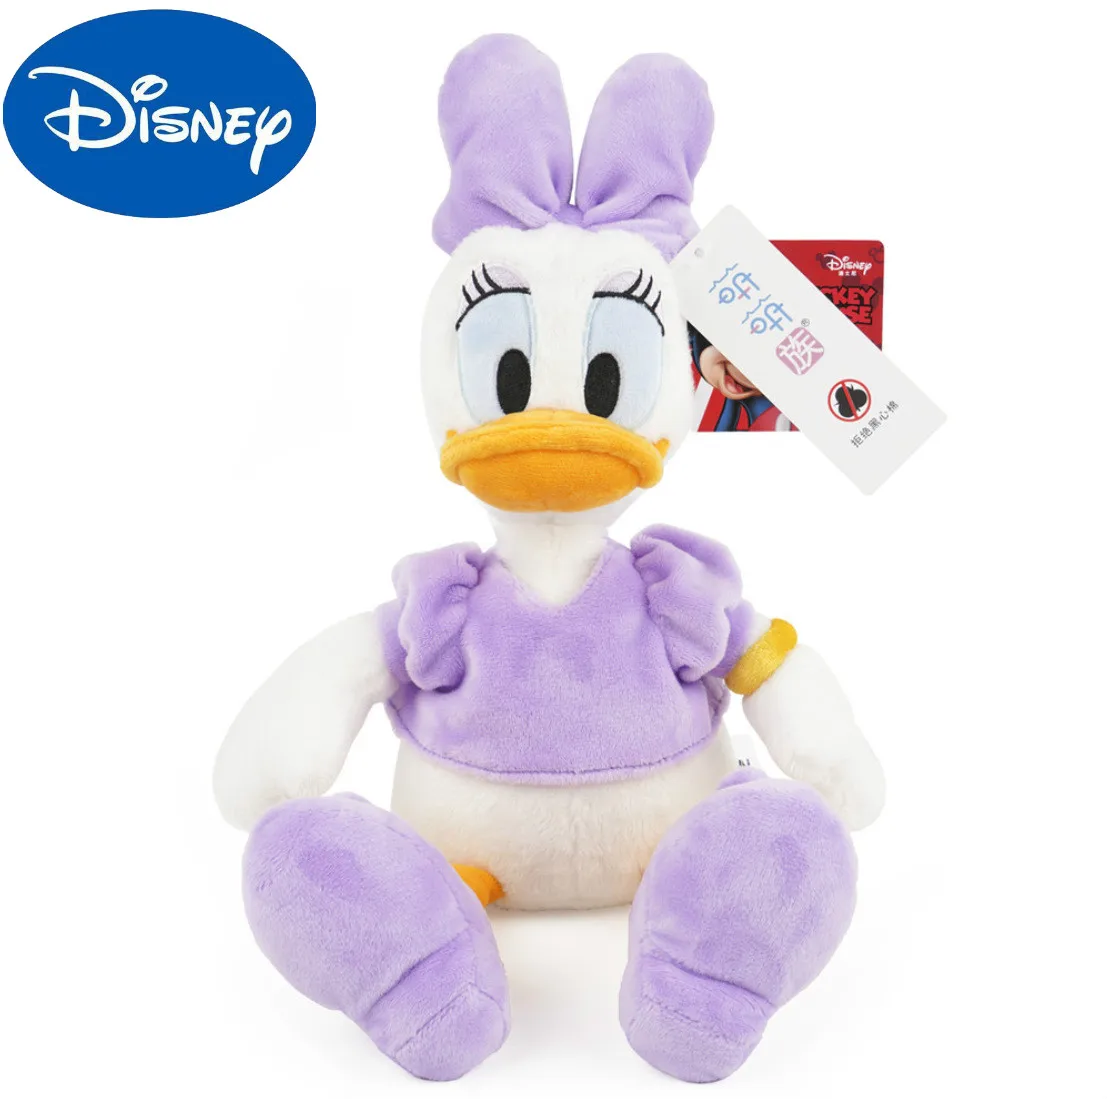 Original Disney Donald canard marguerite Mickey Minnie peluche jouets animaux en peluche poupées anniversaire noël cadeau enfants mariage cadeau ami